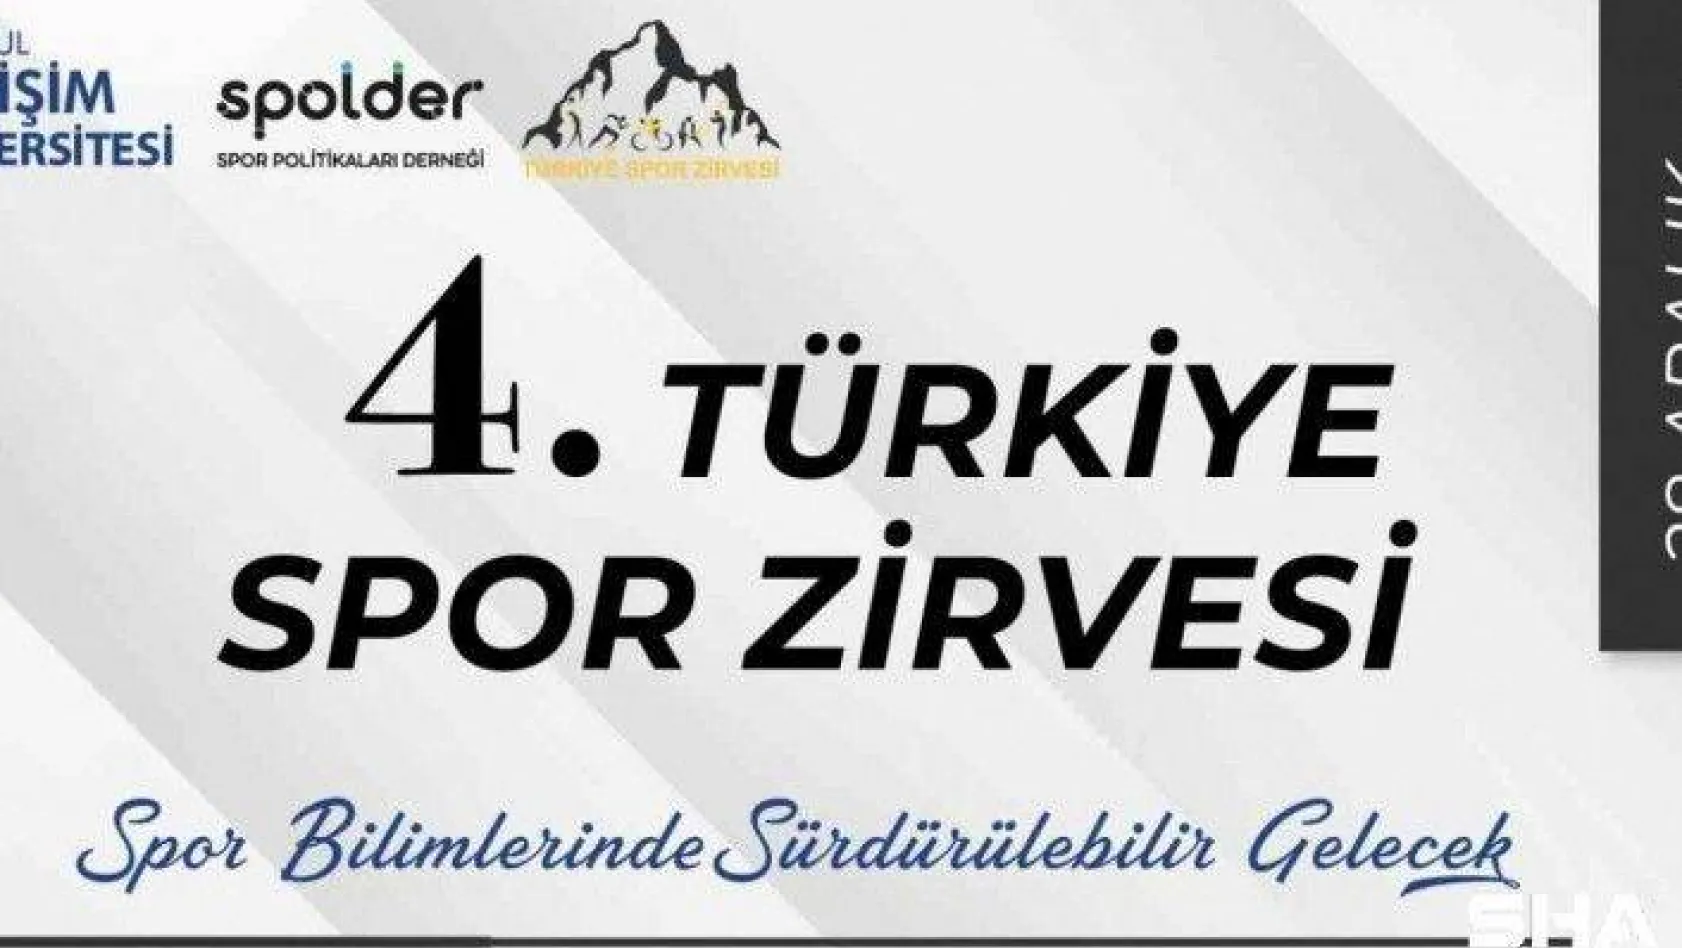 4. Türkiye Spor Zirvesi başlıyor